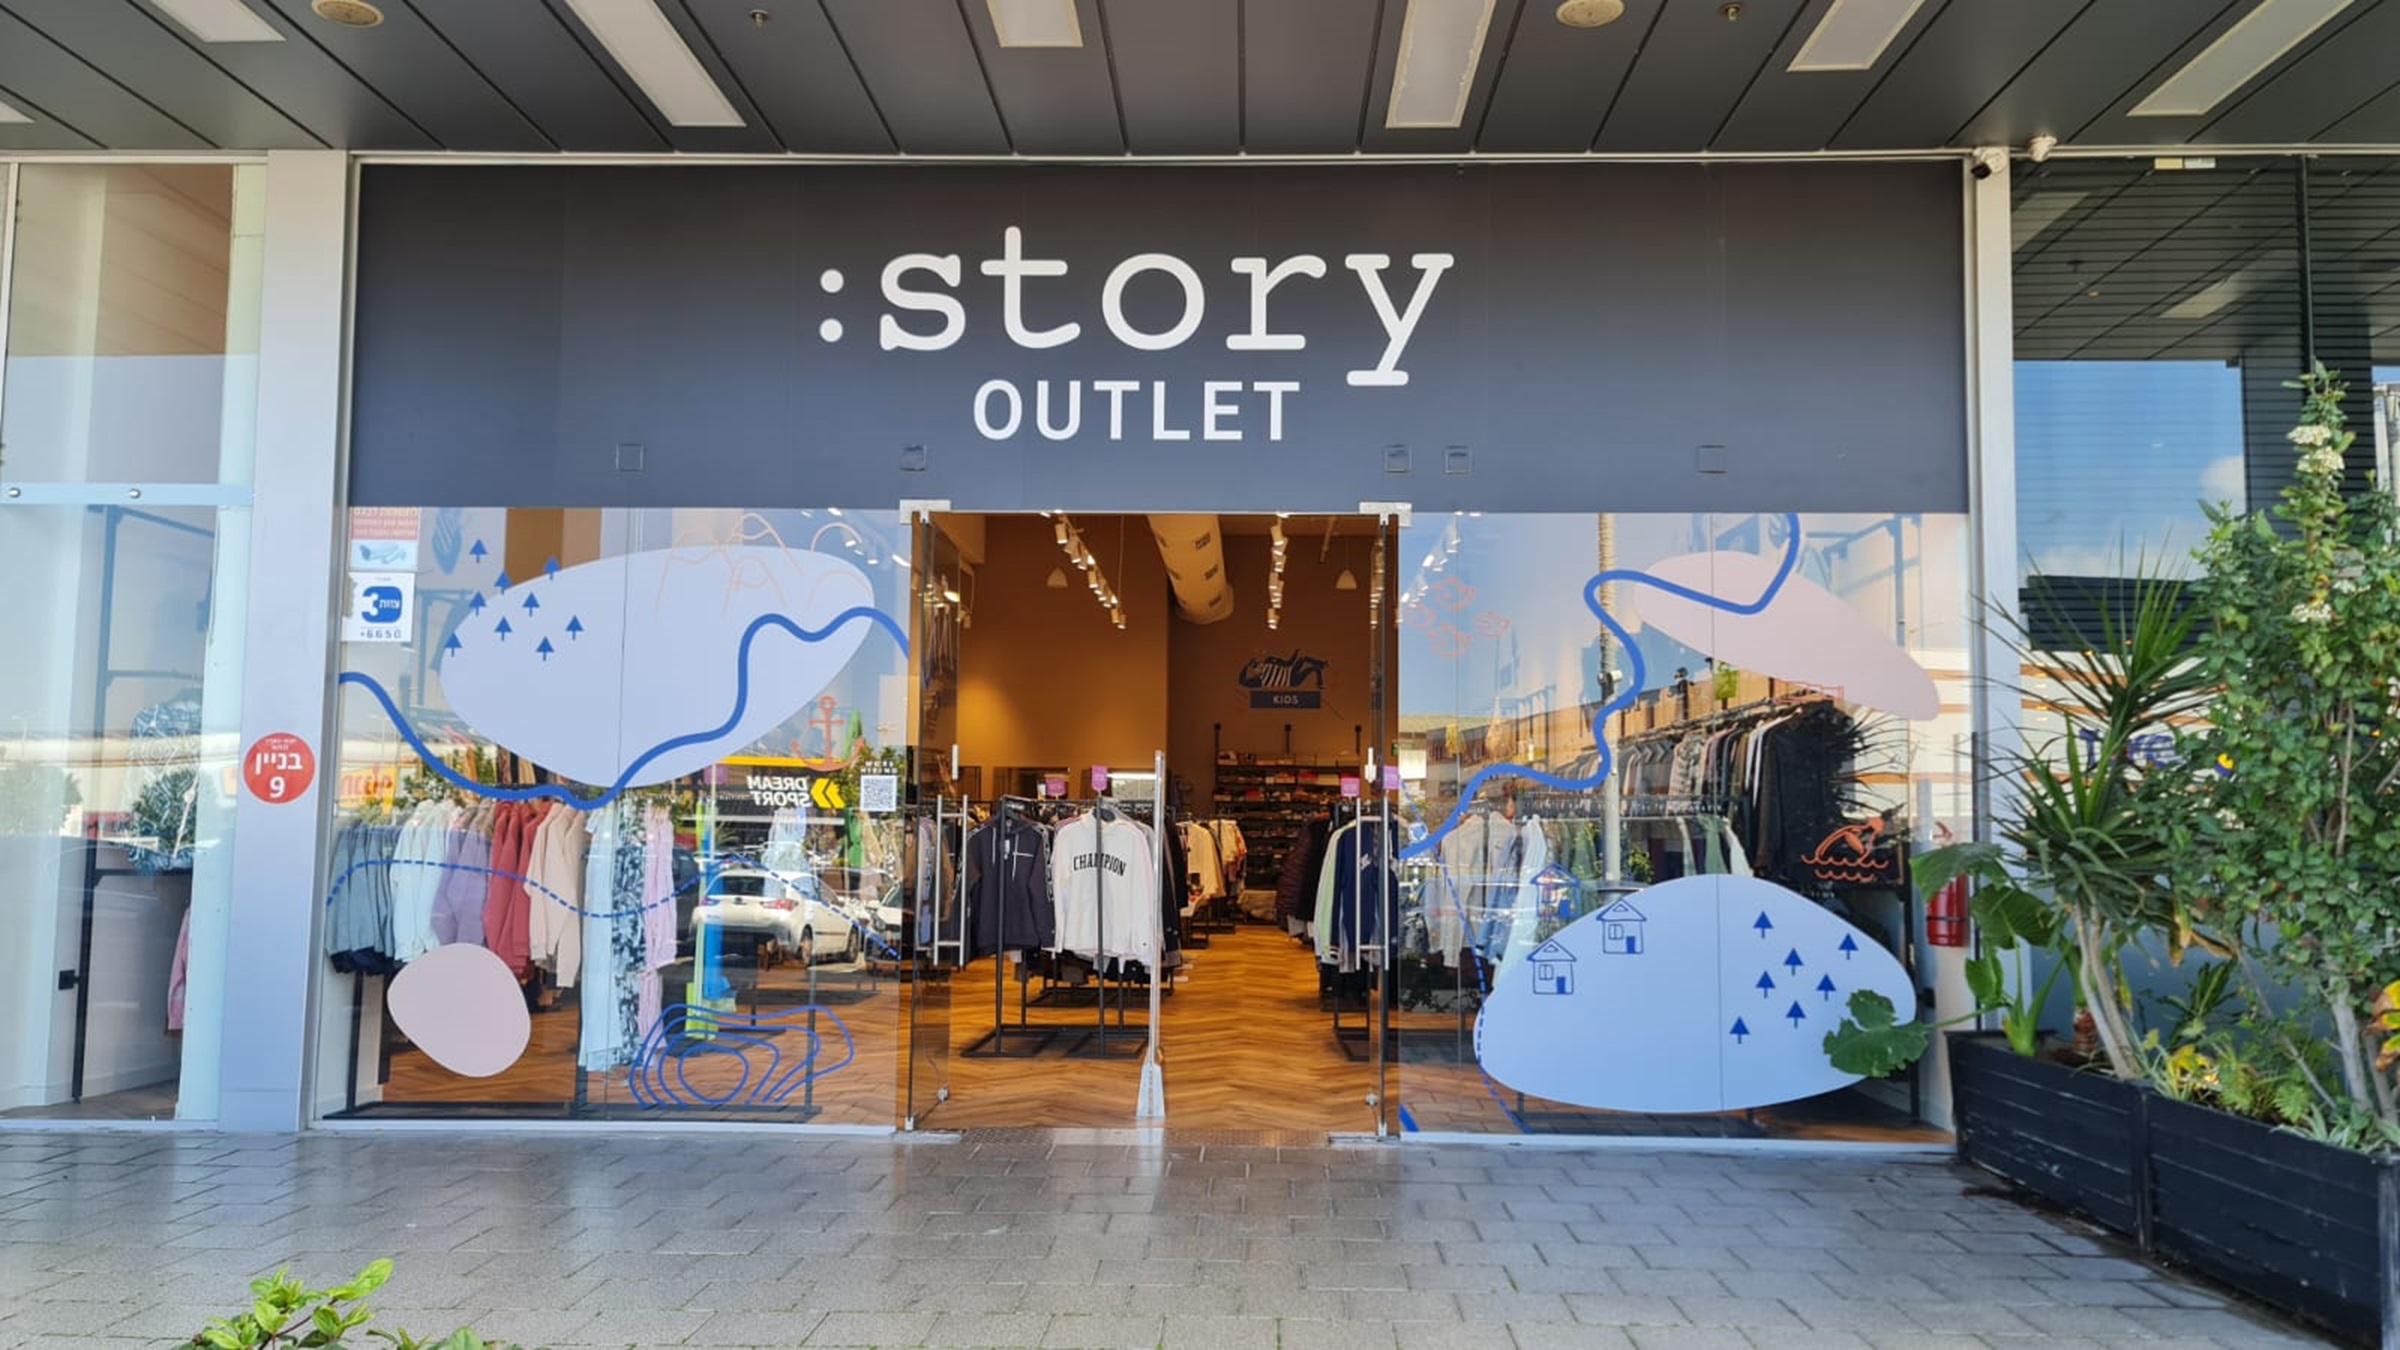 רשת Story  פותחת חנות אאוטלט ראשונה בצפון הארץ במתחם חוצות המפרץ בהשקעה של 700 אלף ₪